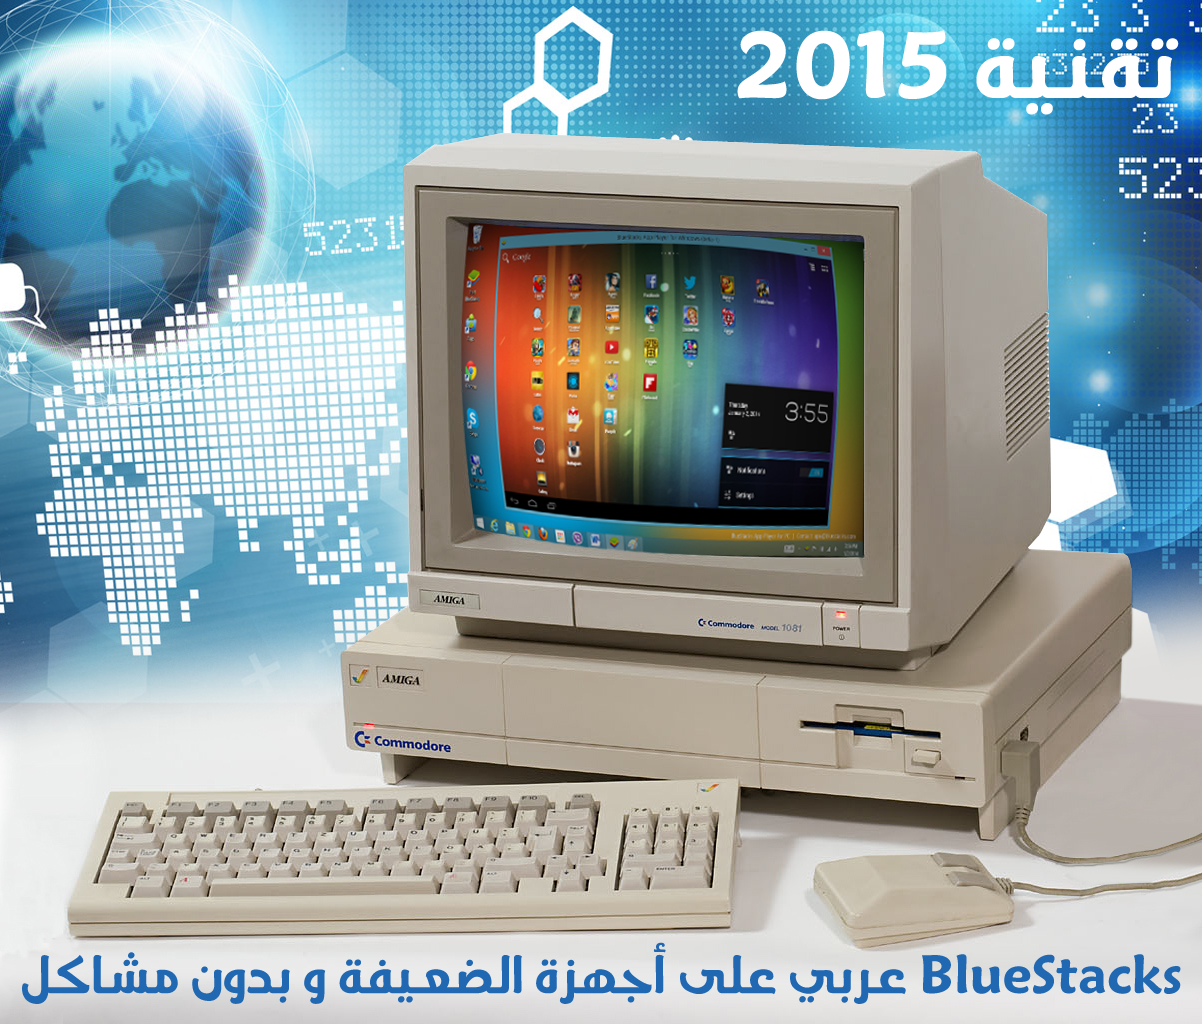 طريقة تثبيت وإستعمال برنامج BlueStacks عربي على أجهزة الضعيفة و بدون مشاكل